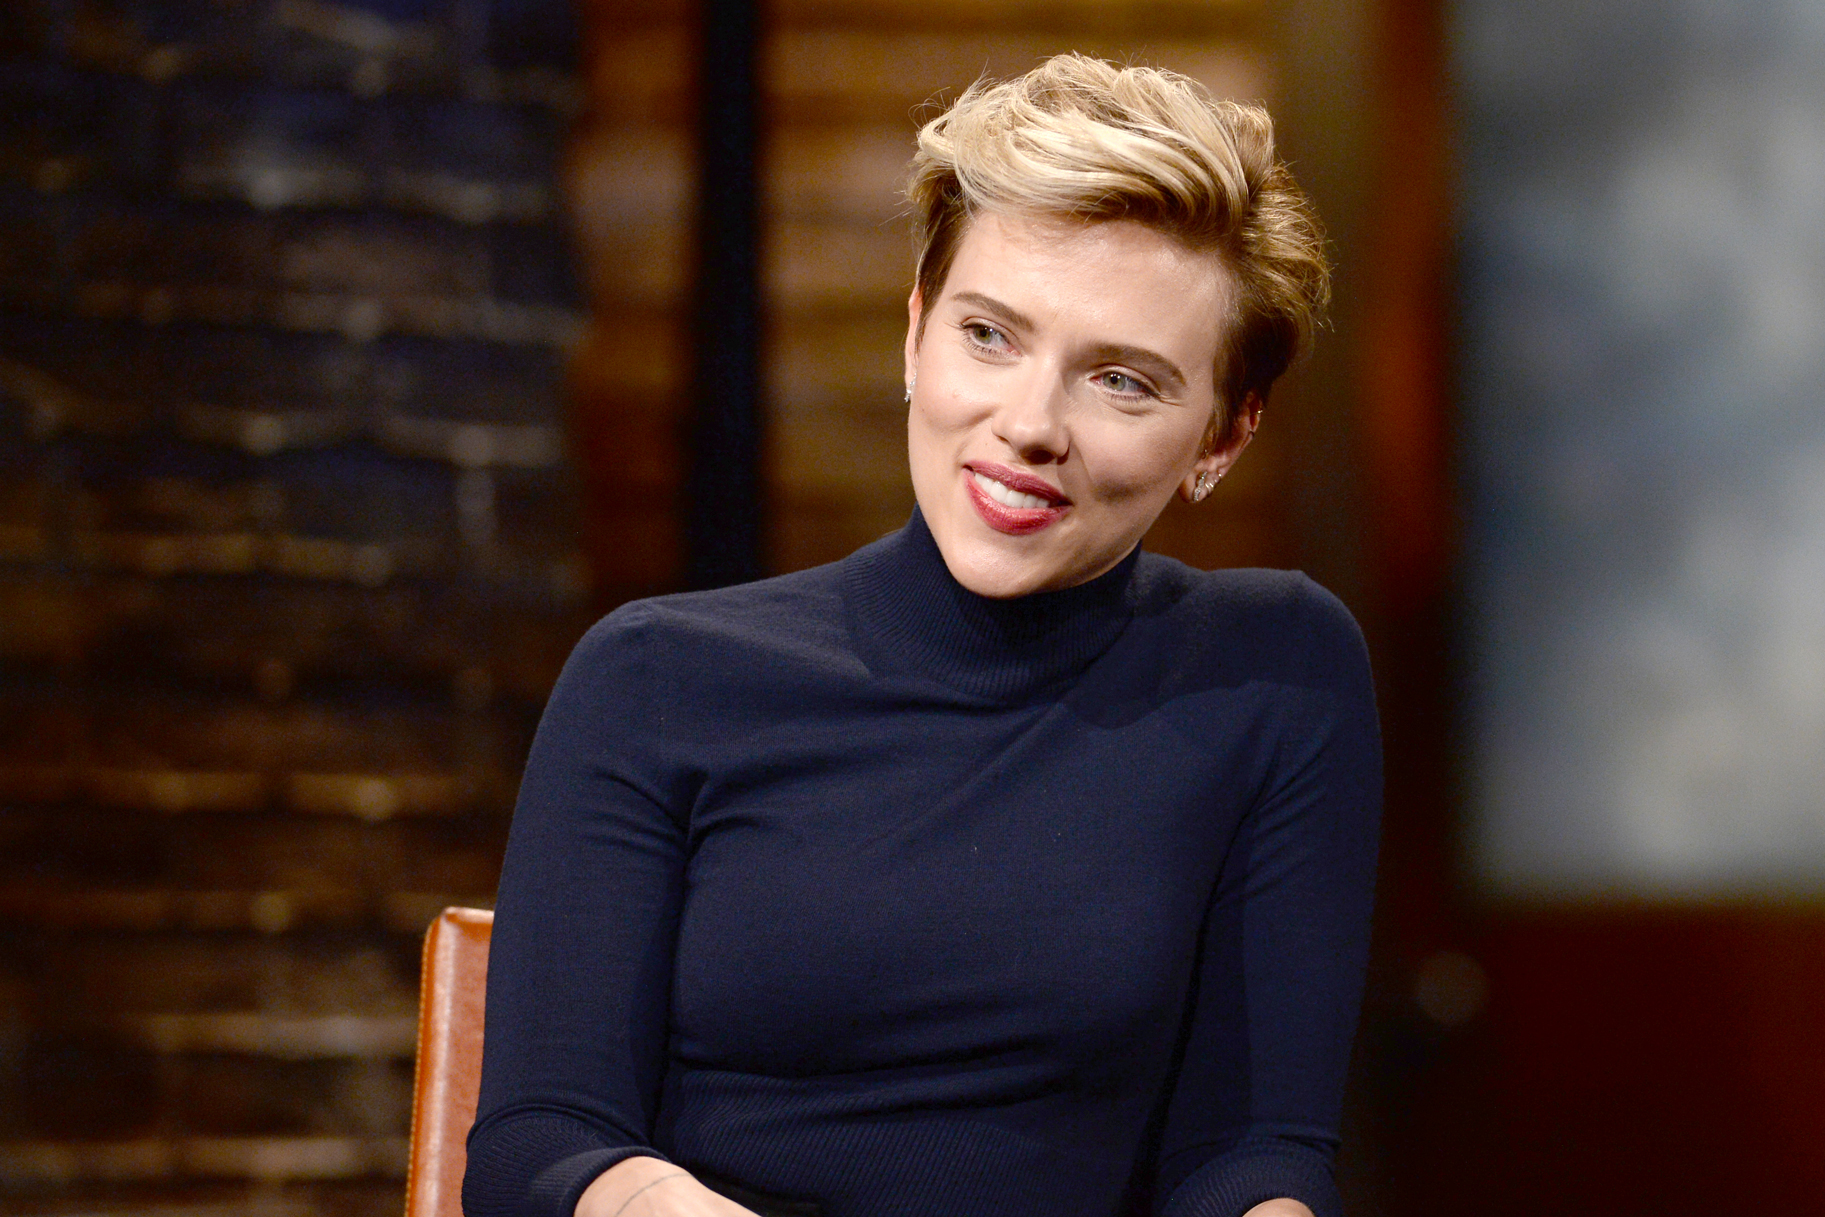 Scarlett Johansson responde críticas por interpretar homem trans em filme